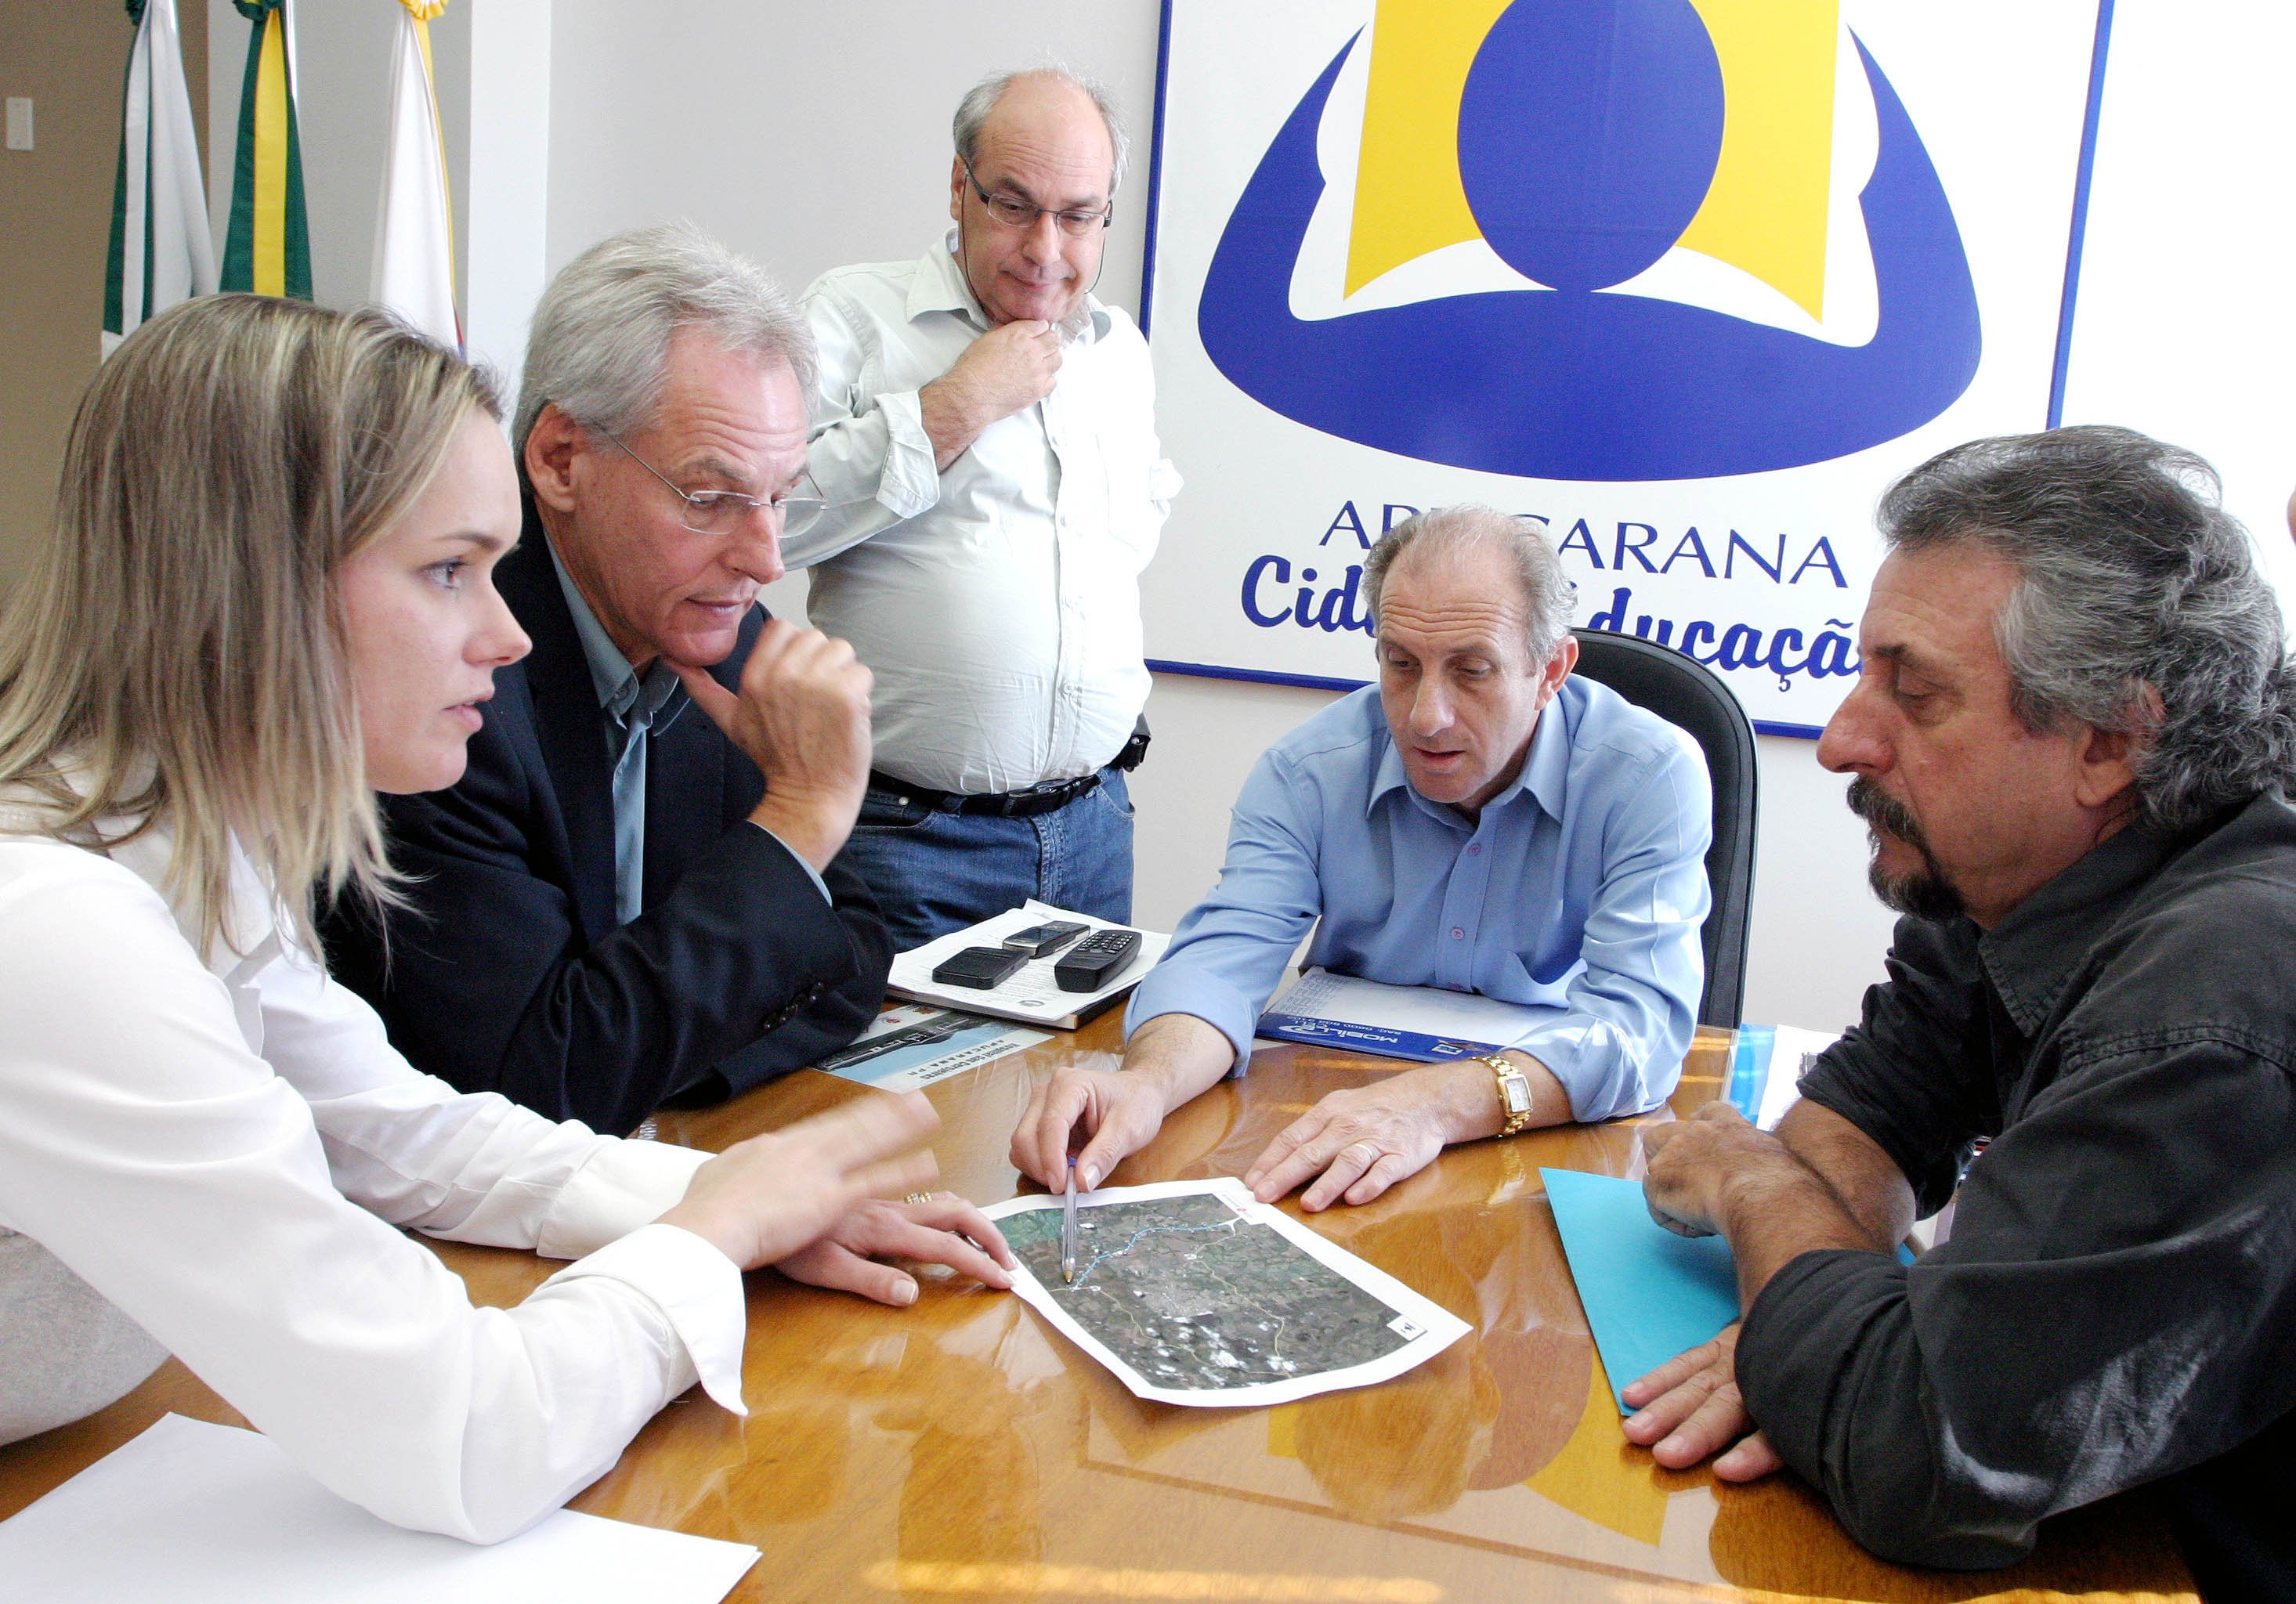 Presidente da Rodonorte com prefeito e secretários de Apucarana